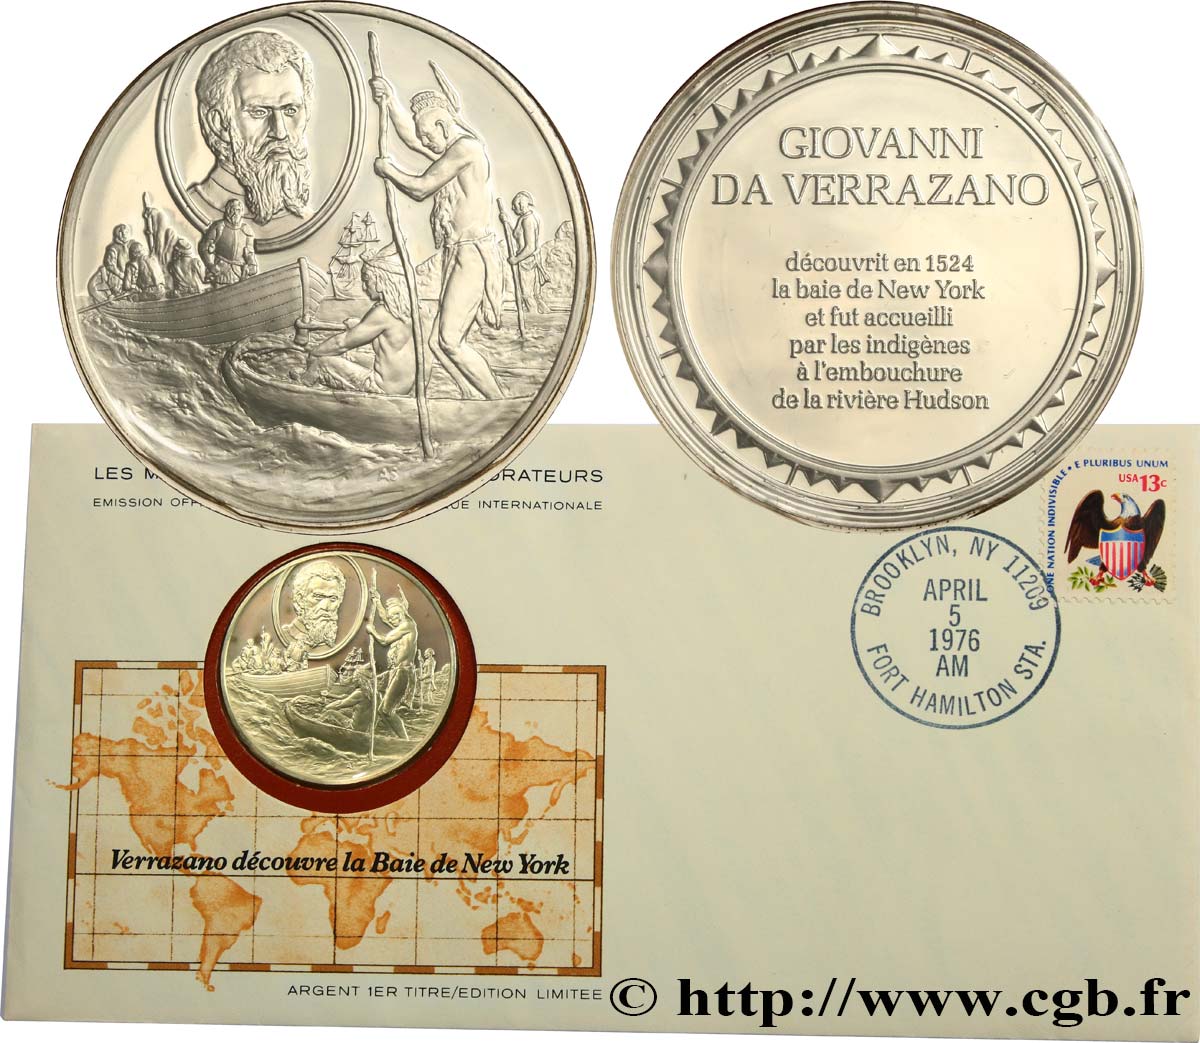 LES MÉDAILLES DES GRANDS EXPLORATEURS Enveloppe “Timbre médaille”, Verrazano découvre la Baie de New York SPL